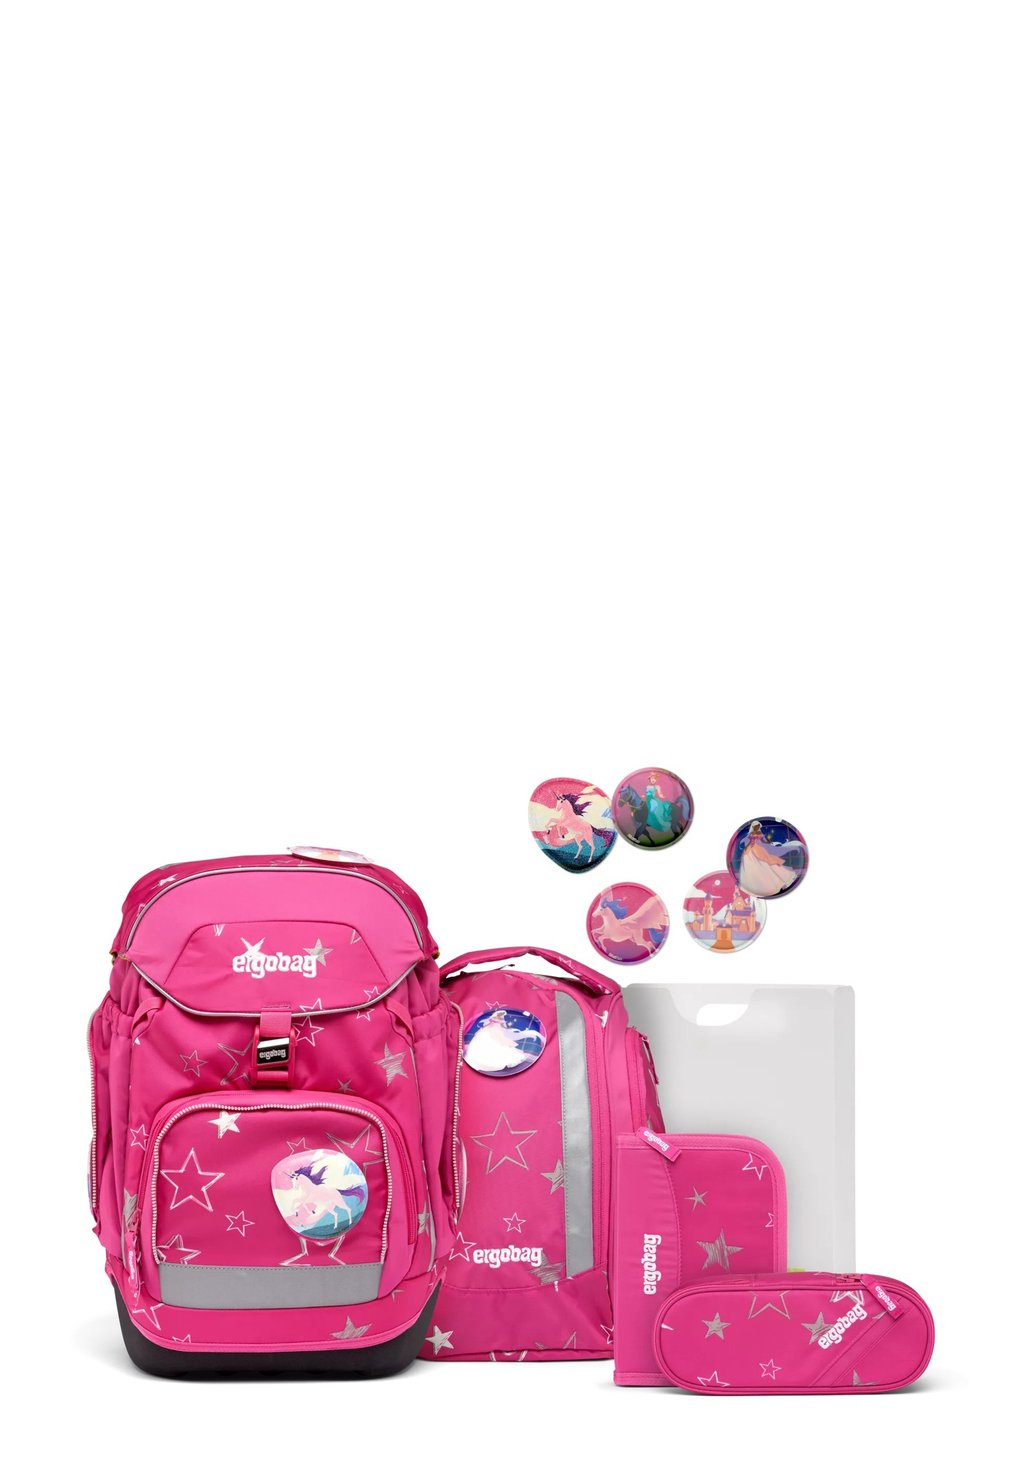 Комплект школьных сумок LUMI-EDITION Ergobag, цвет pink